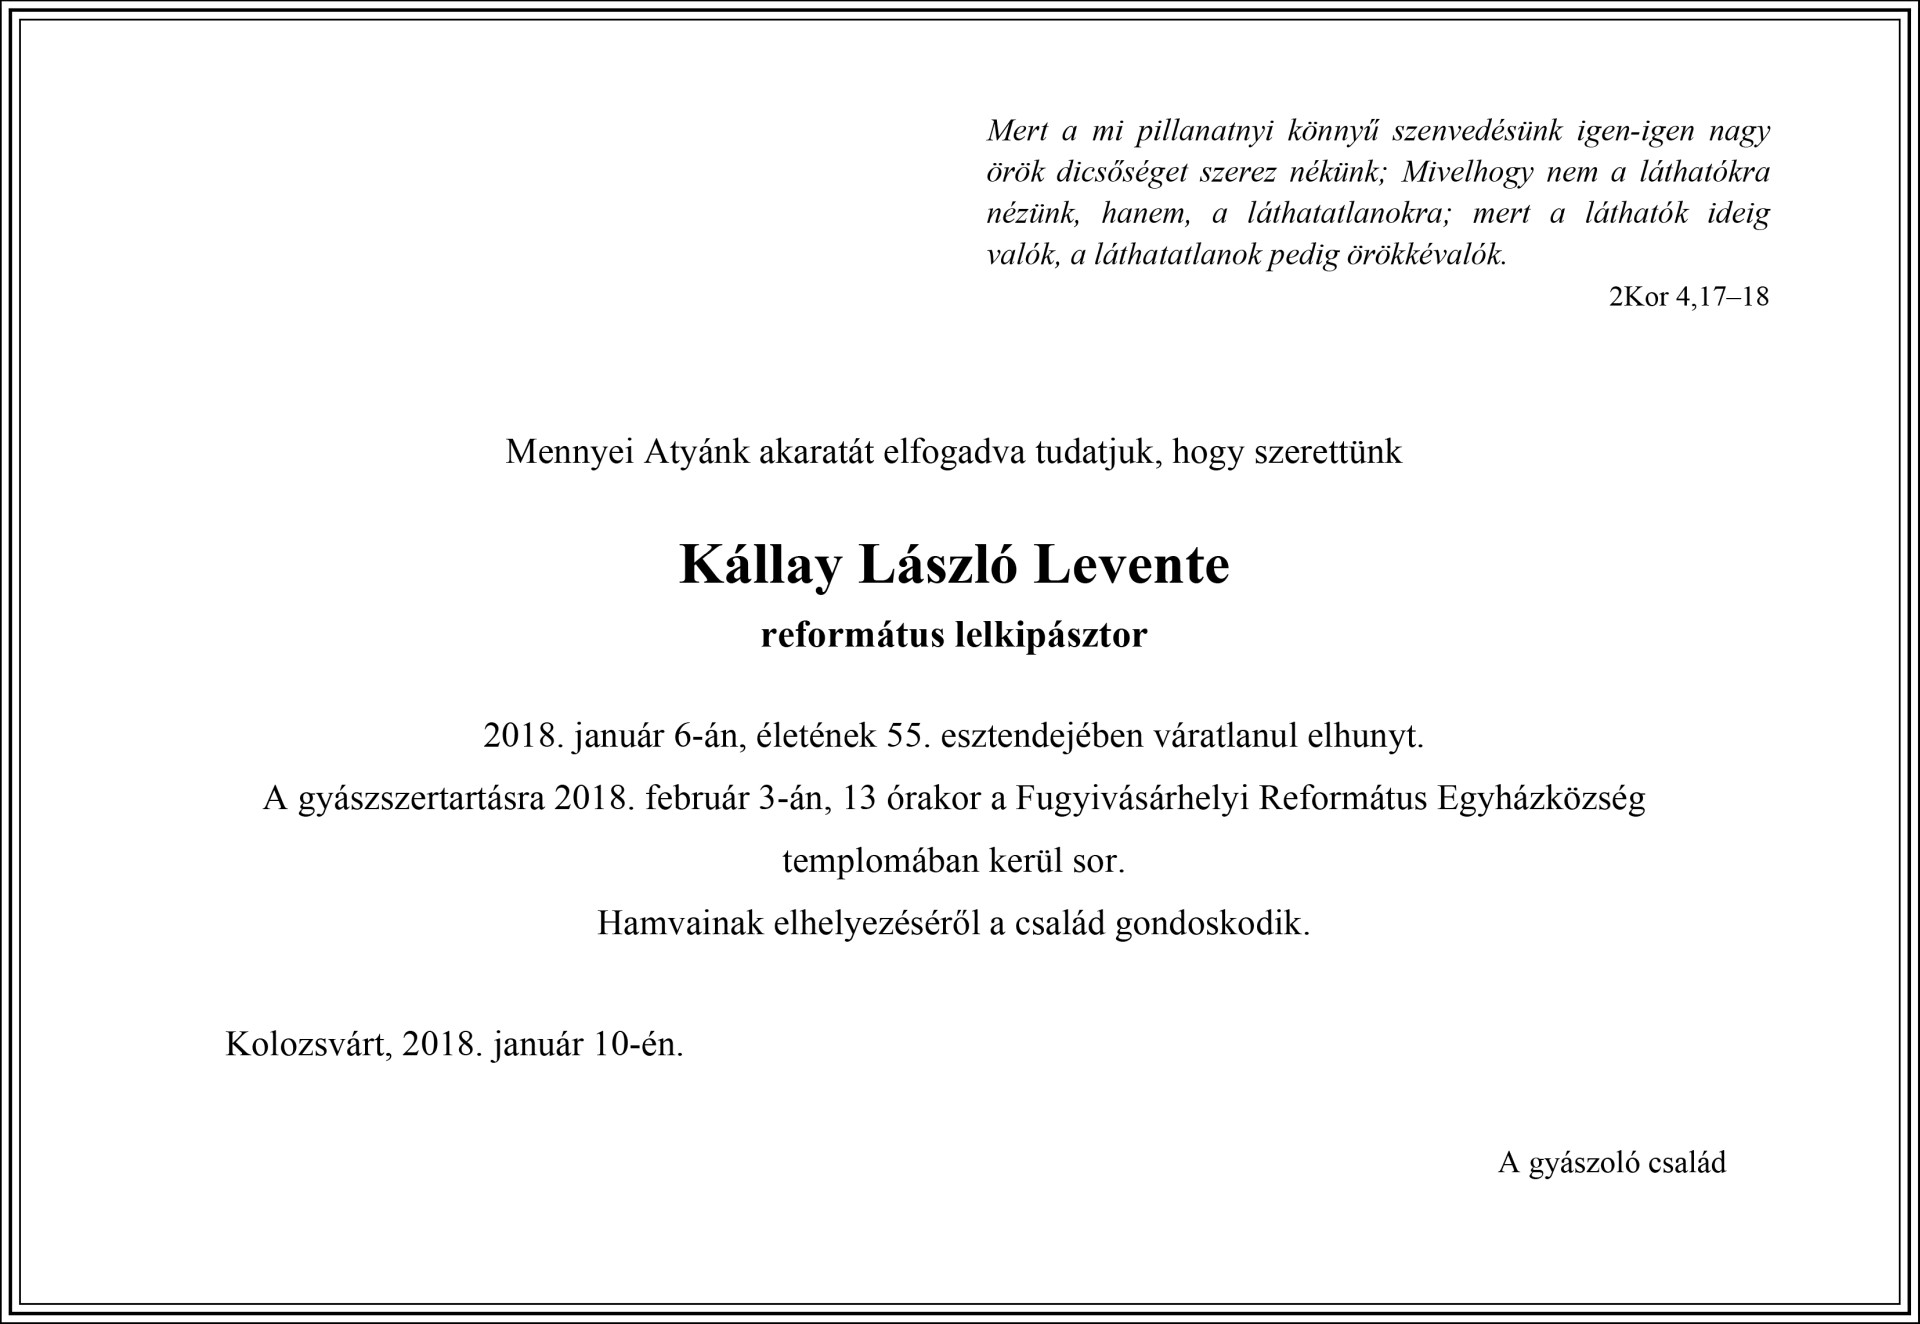 Gyászjelentés - Kállay László Levente